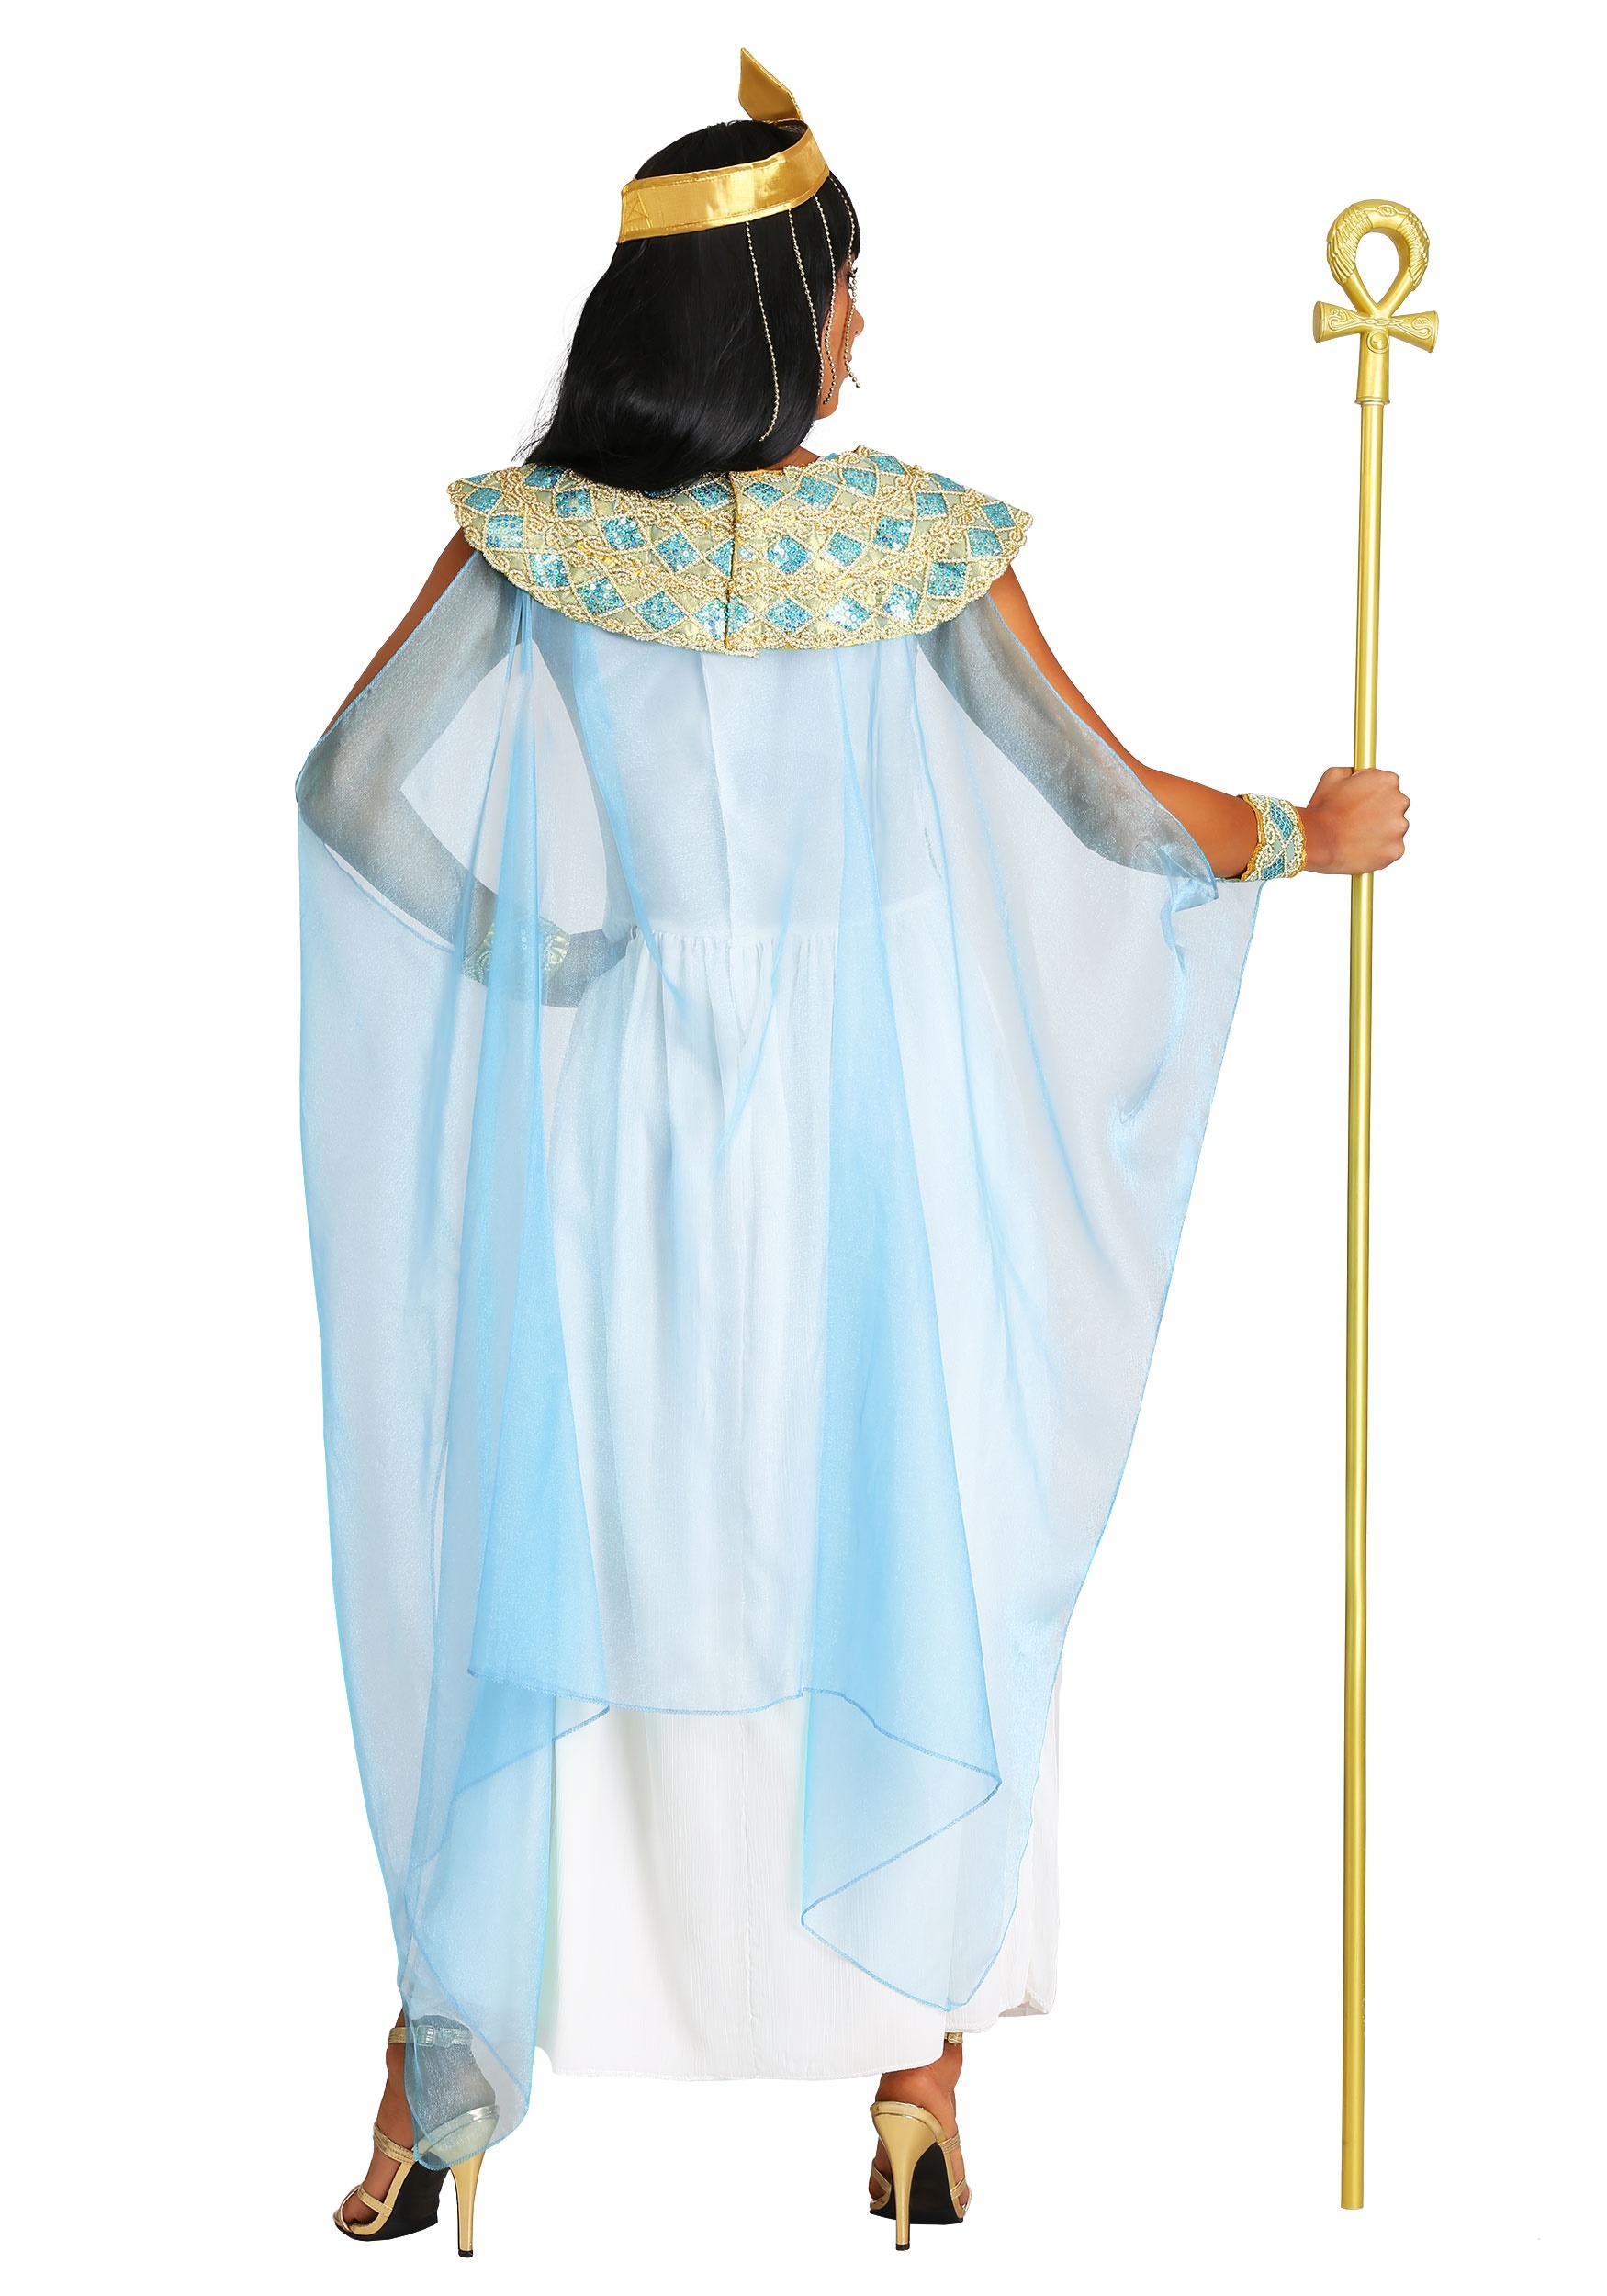 Disfraz de Cleopatra para adultos Multicolor Colombia